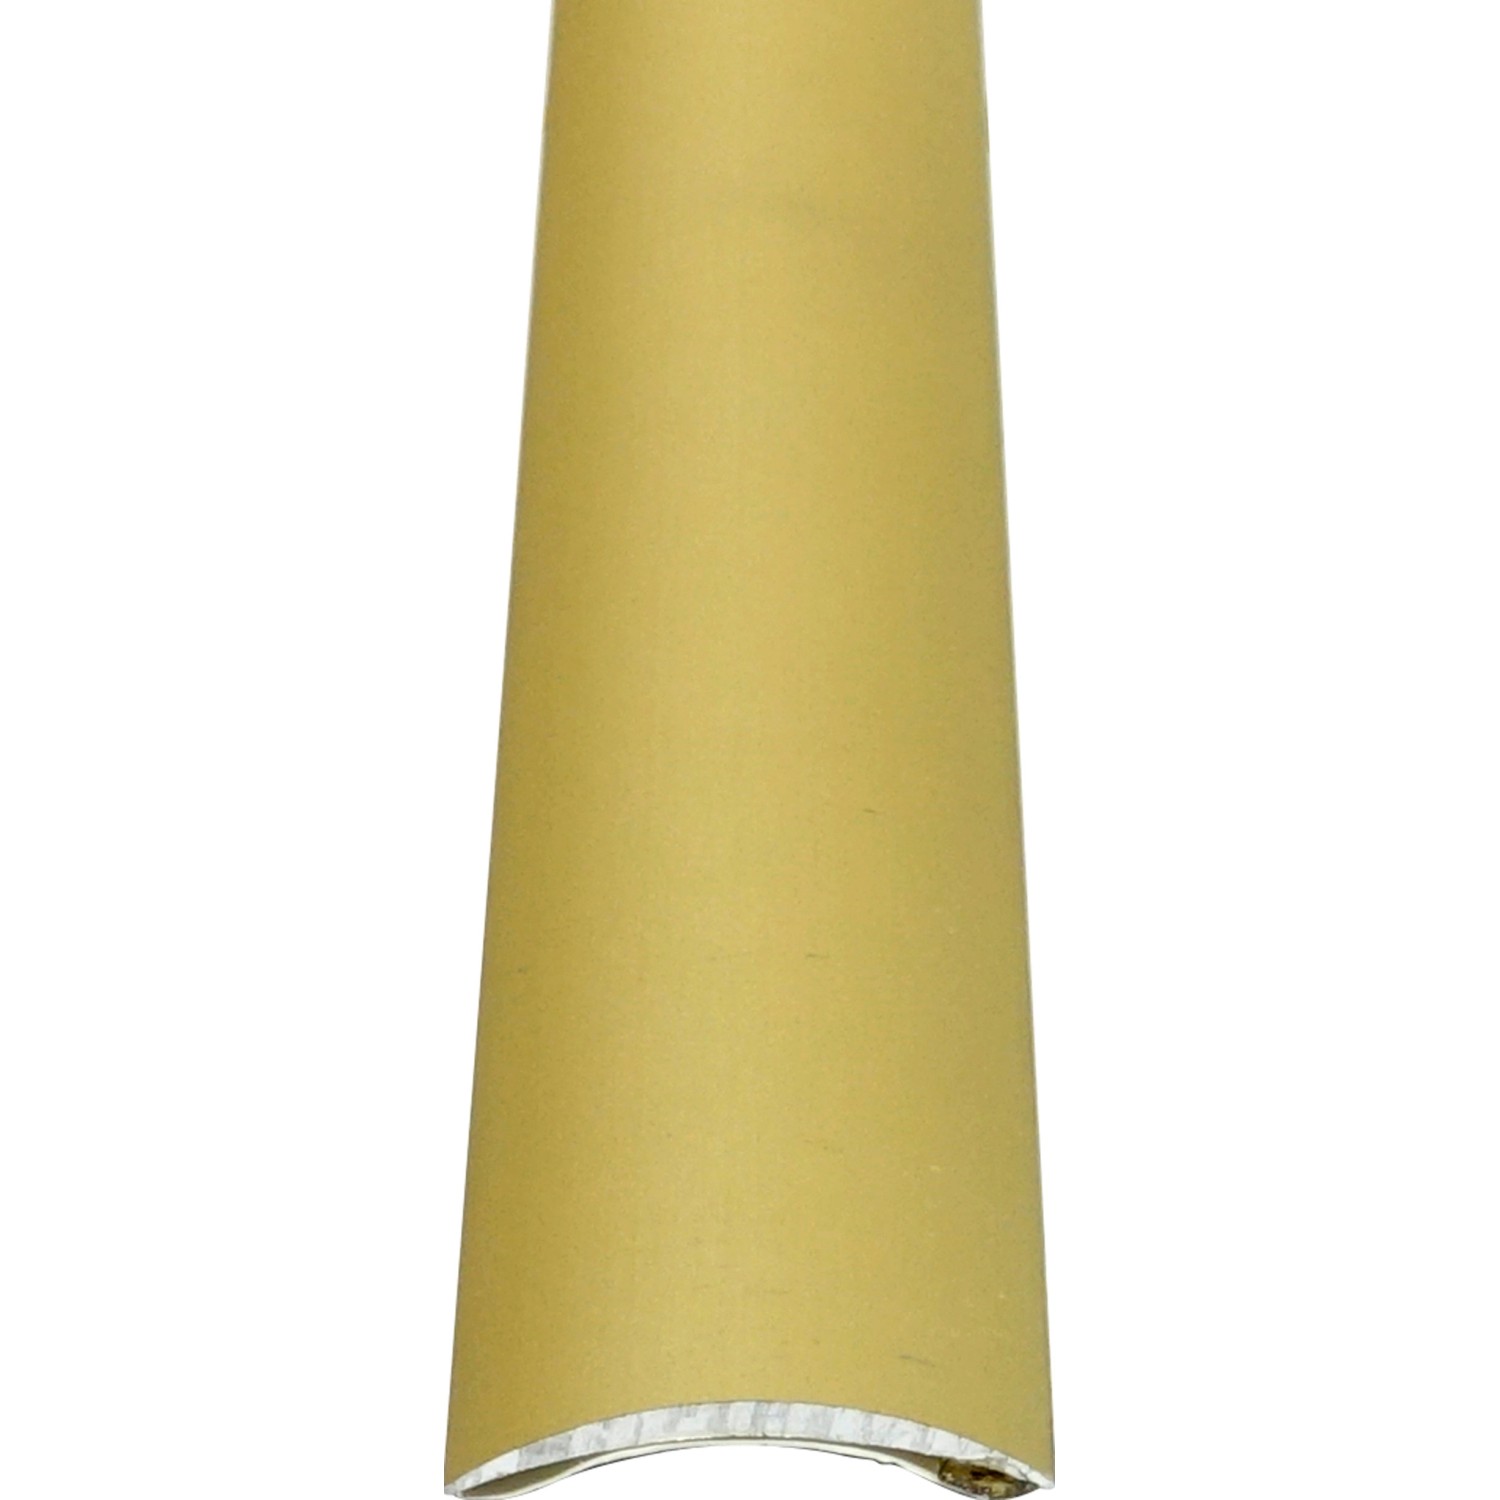 Übergangsprofil Standard Selbstklebend BAS SK Sand 5 mm x 30 mm Länge 1000 mm von Praktikus